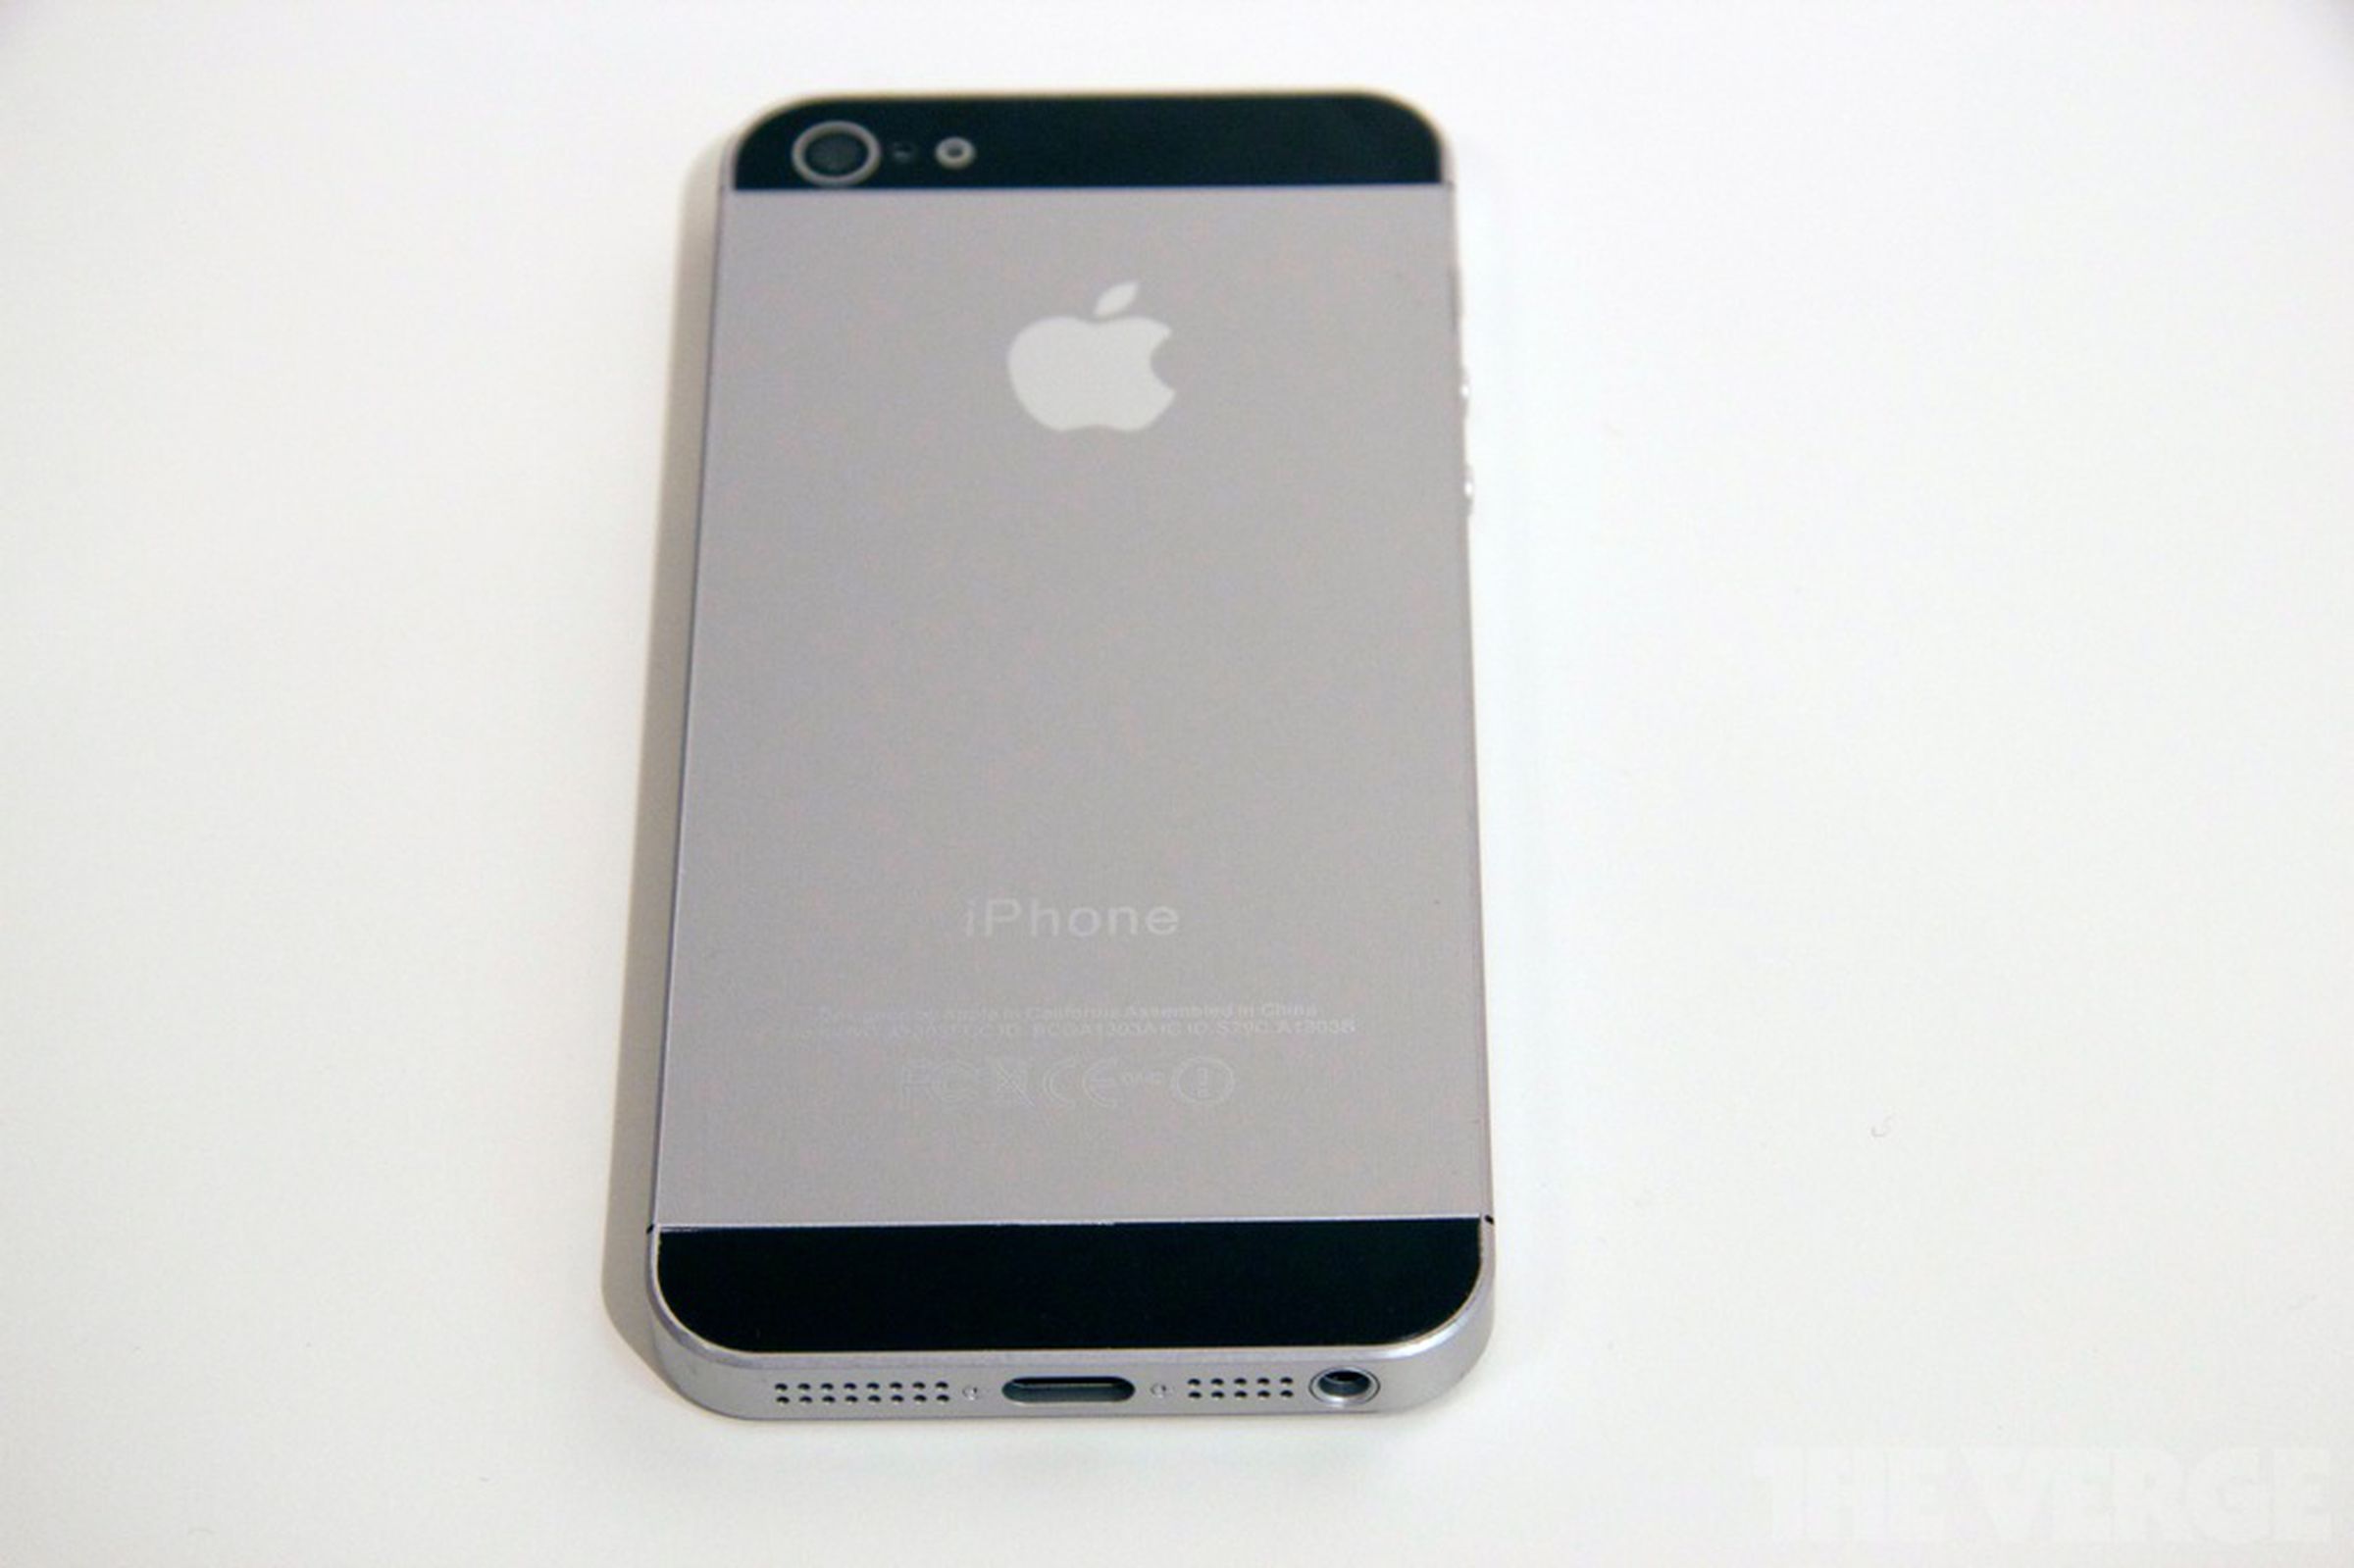 iPhone 5 mockup at IFA 2012